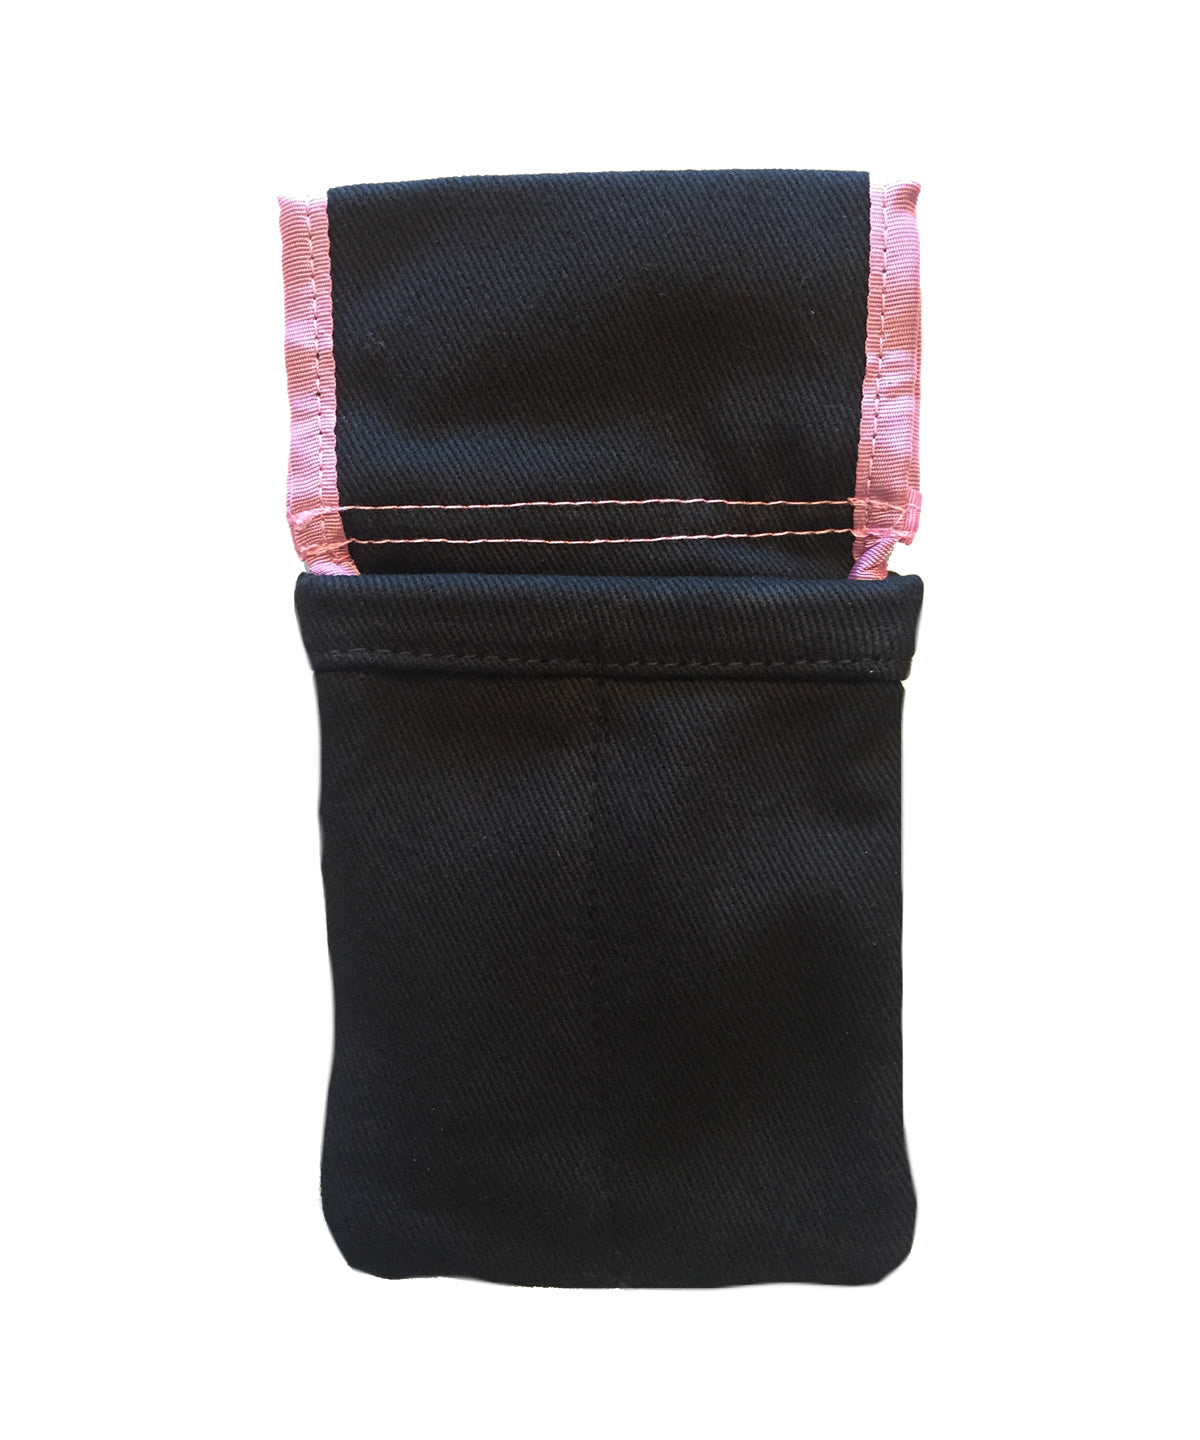 Detailer's Bag – Kindig-it Design